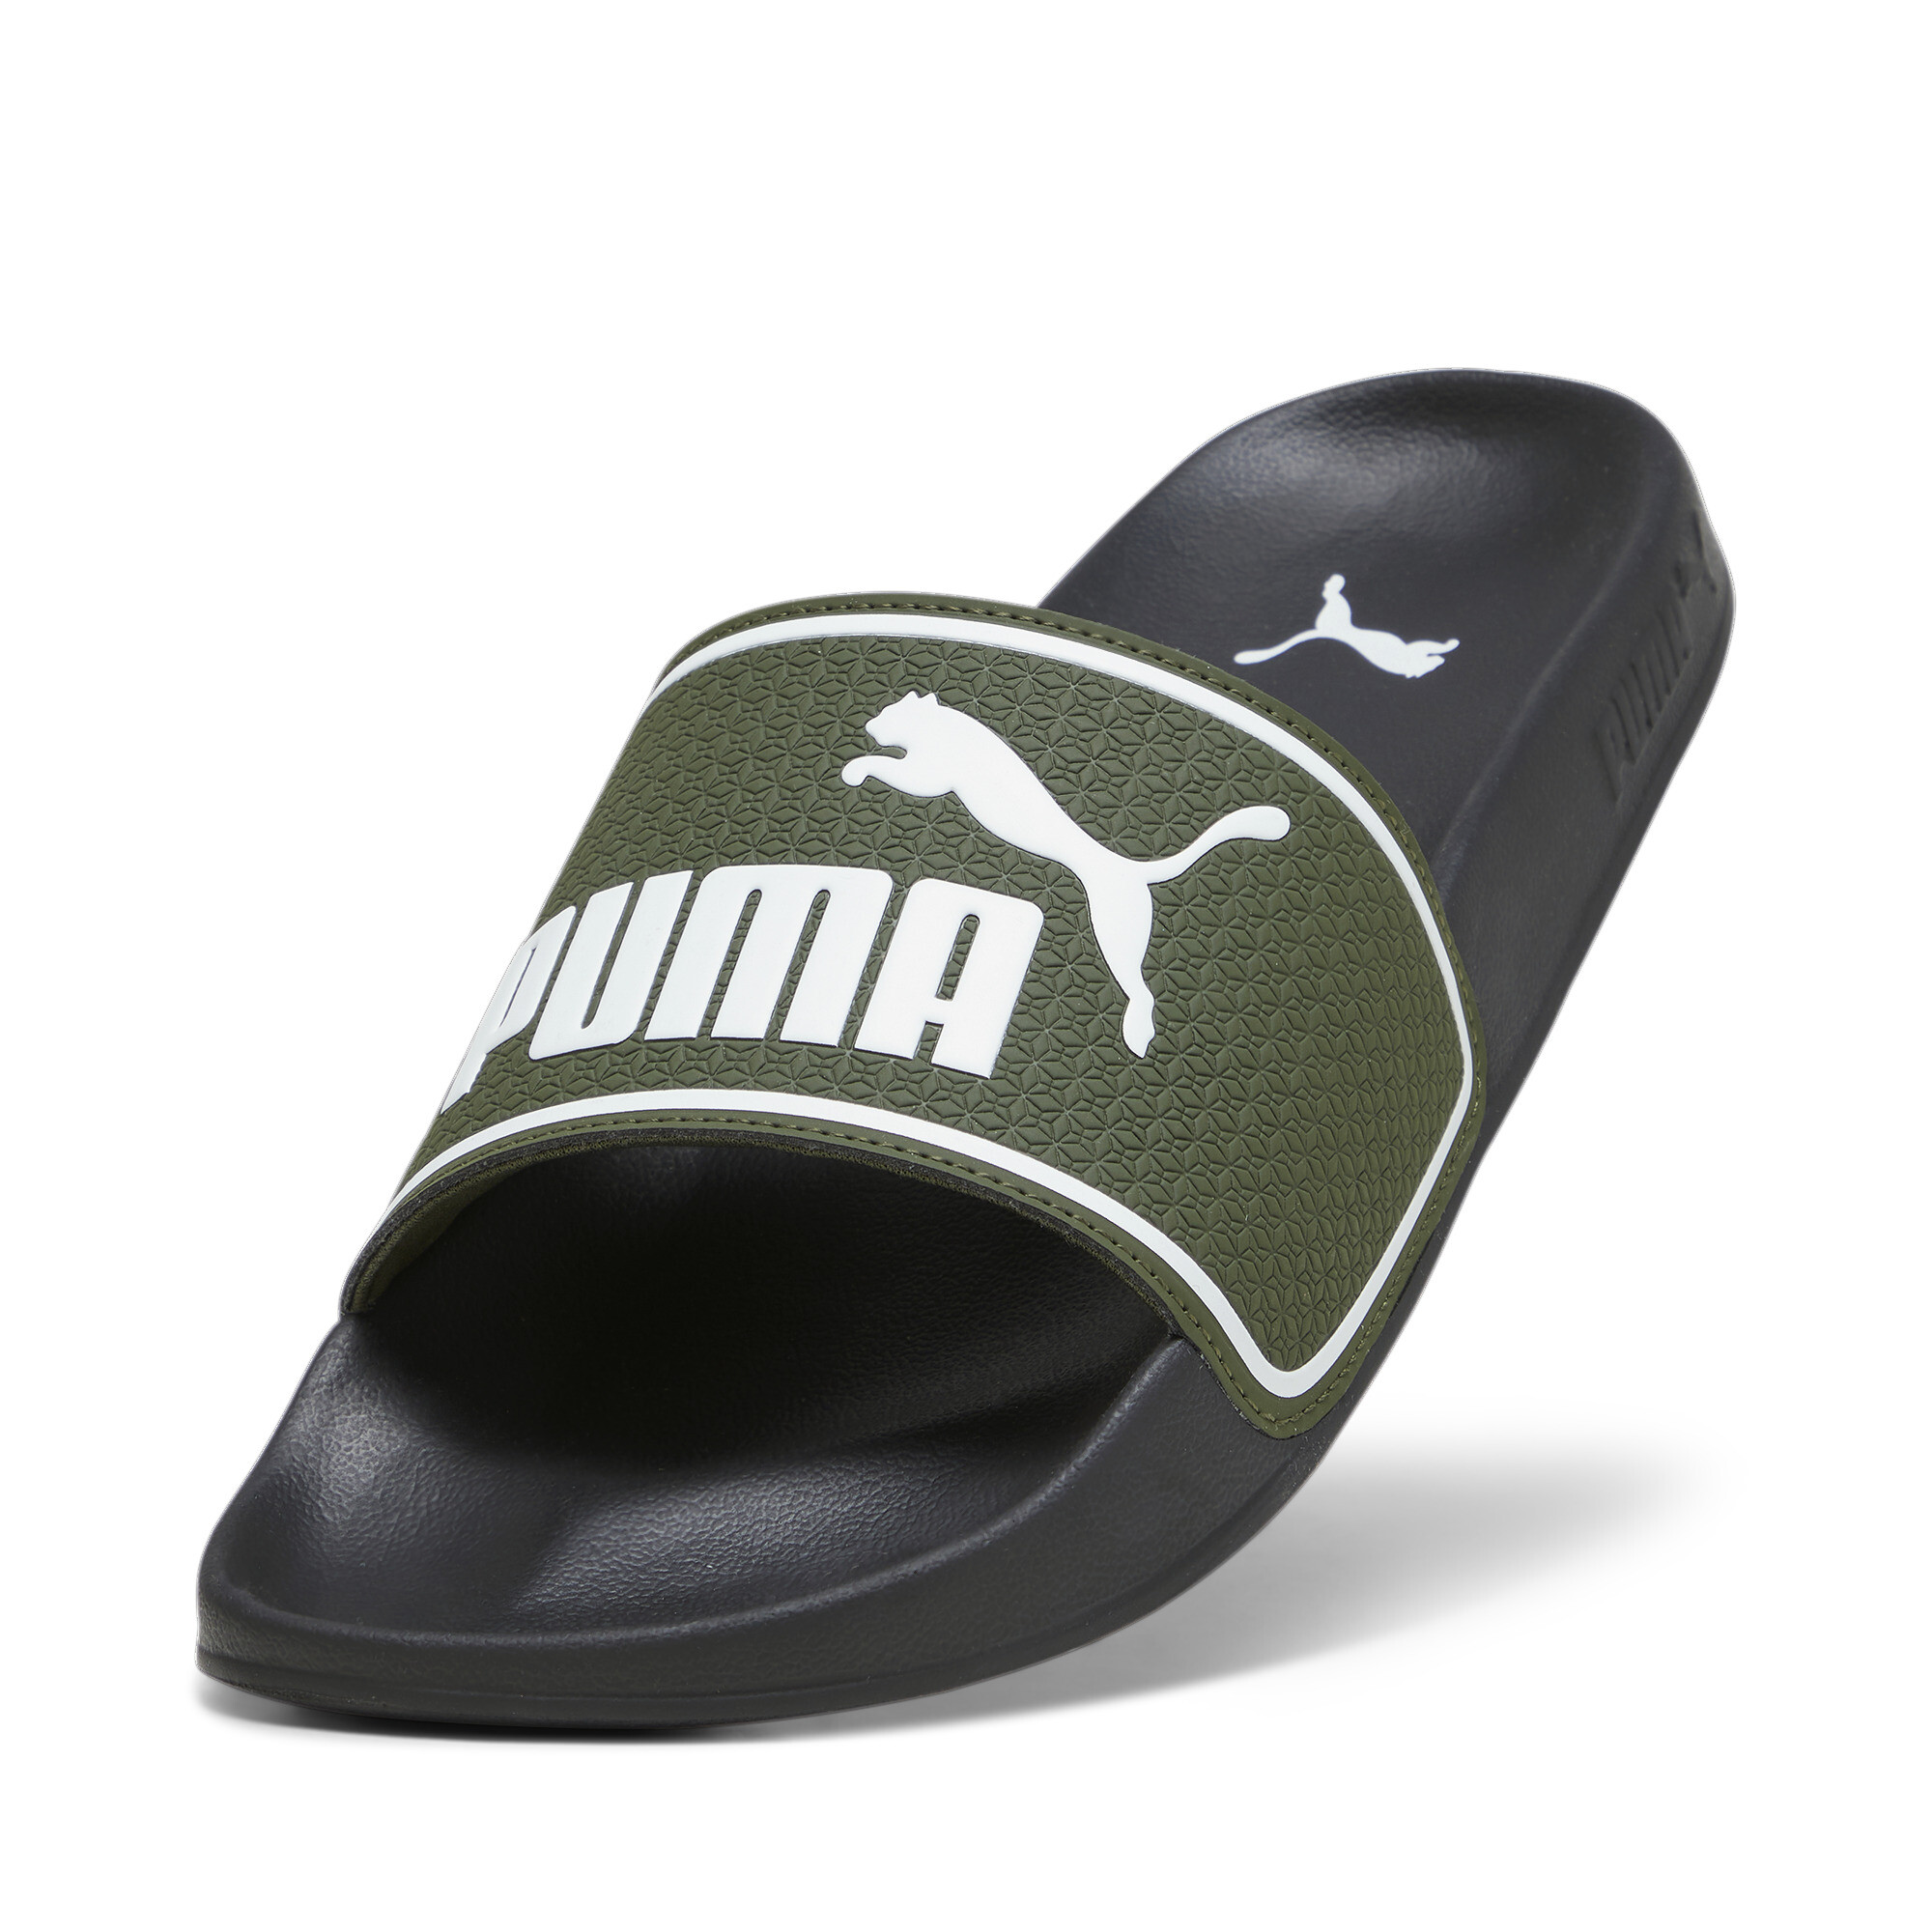 Men's PUMA Leadcat 2.0 Sandals In Green, Size EU 43